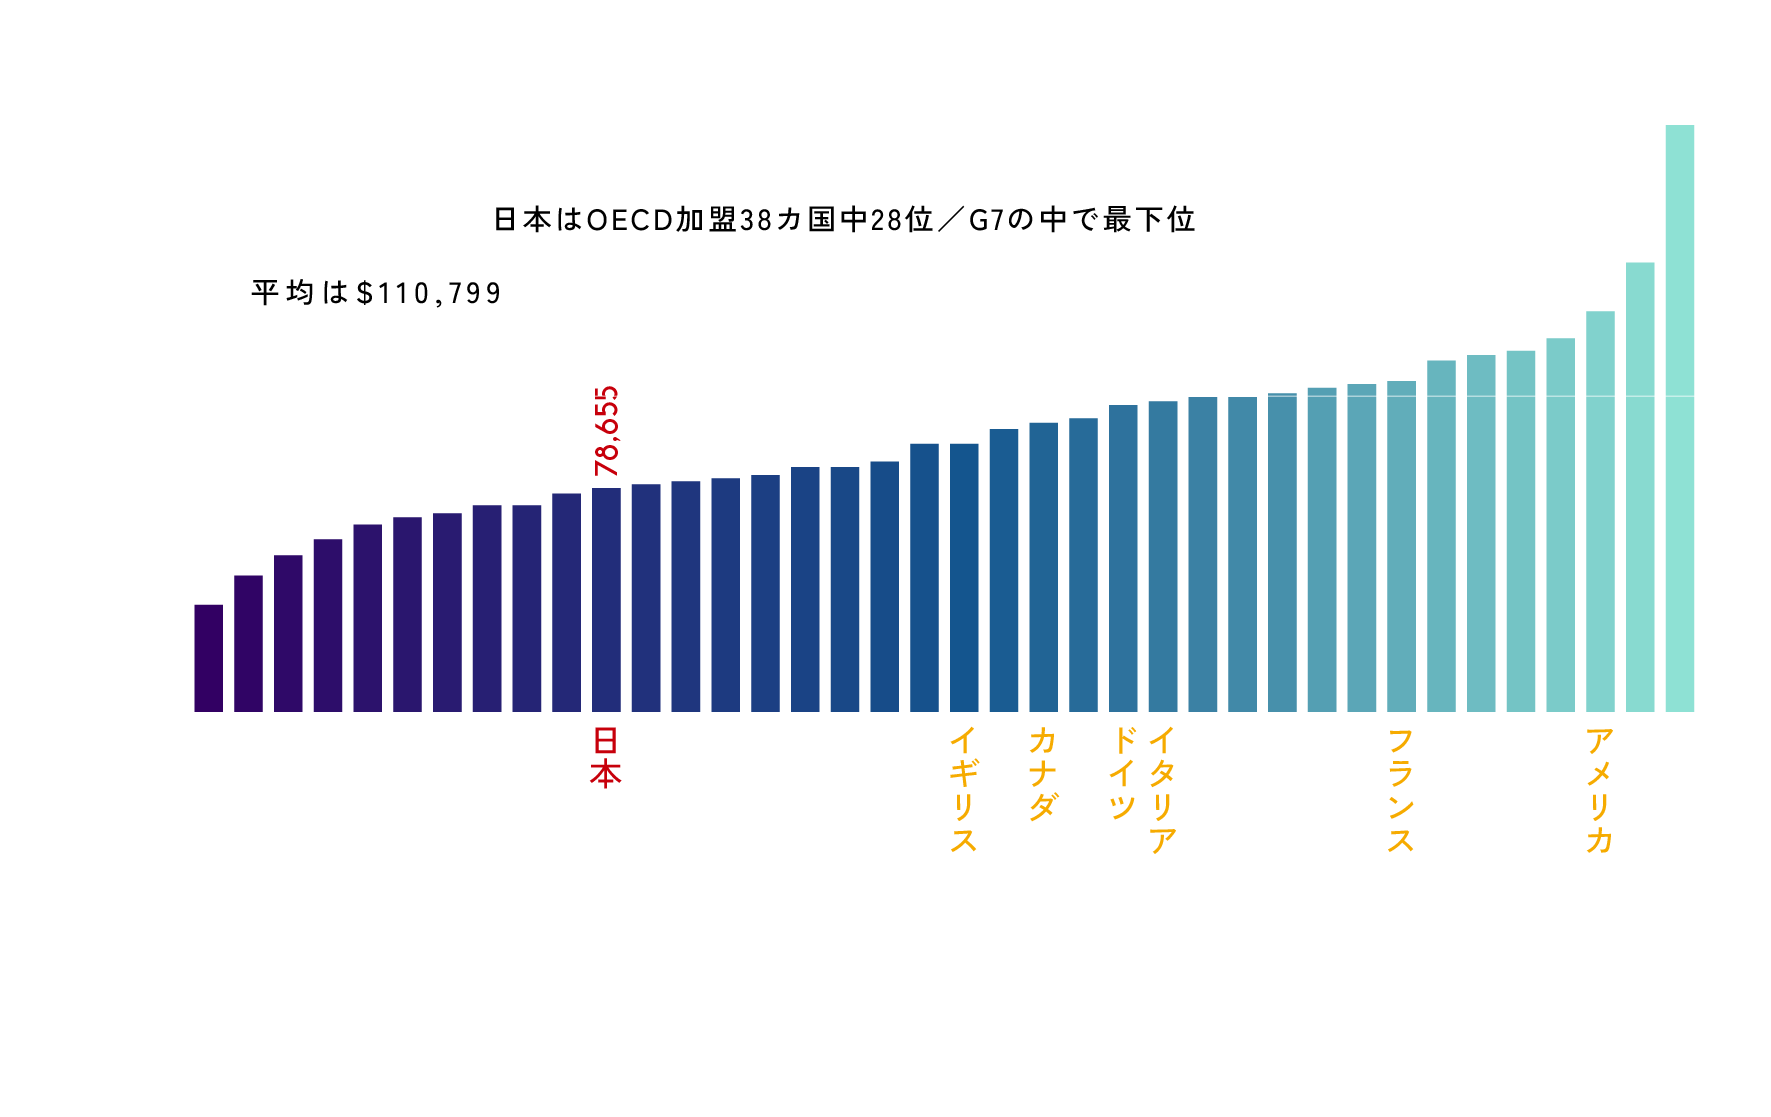 OECD加盟国の労働生産性グラフ